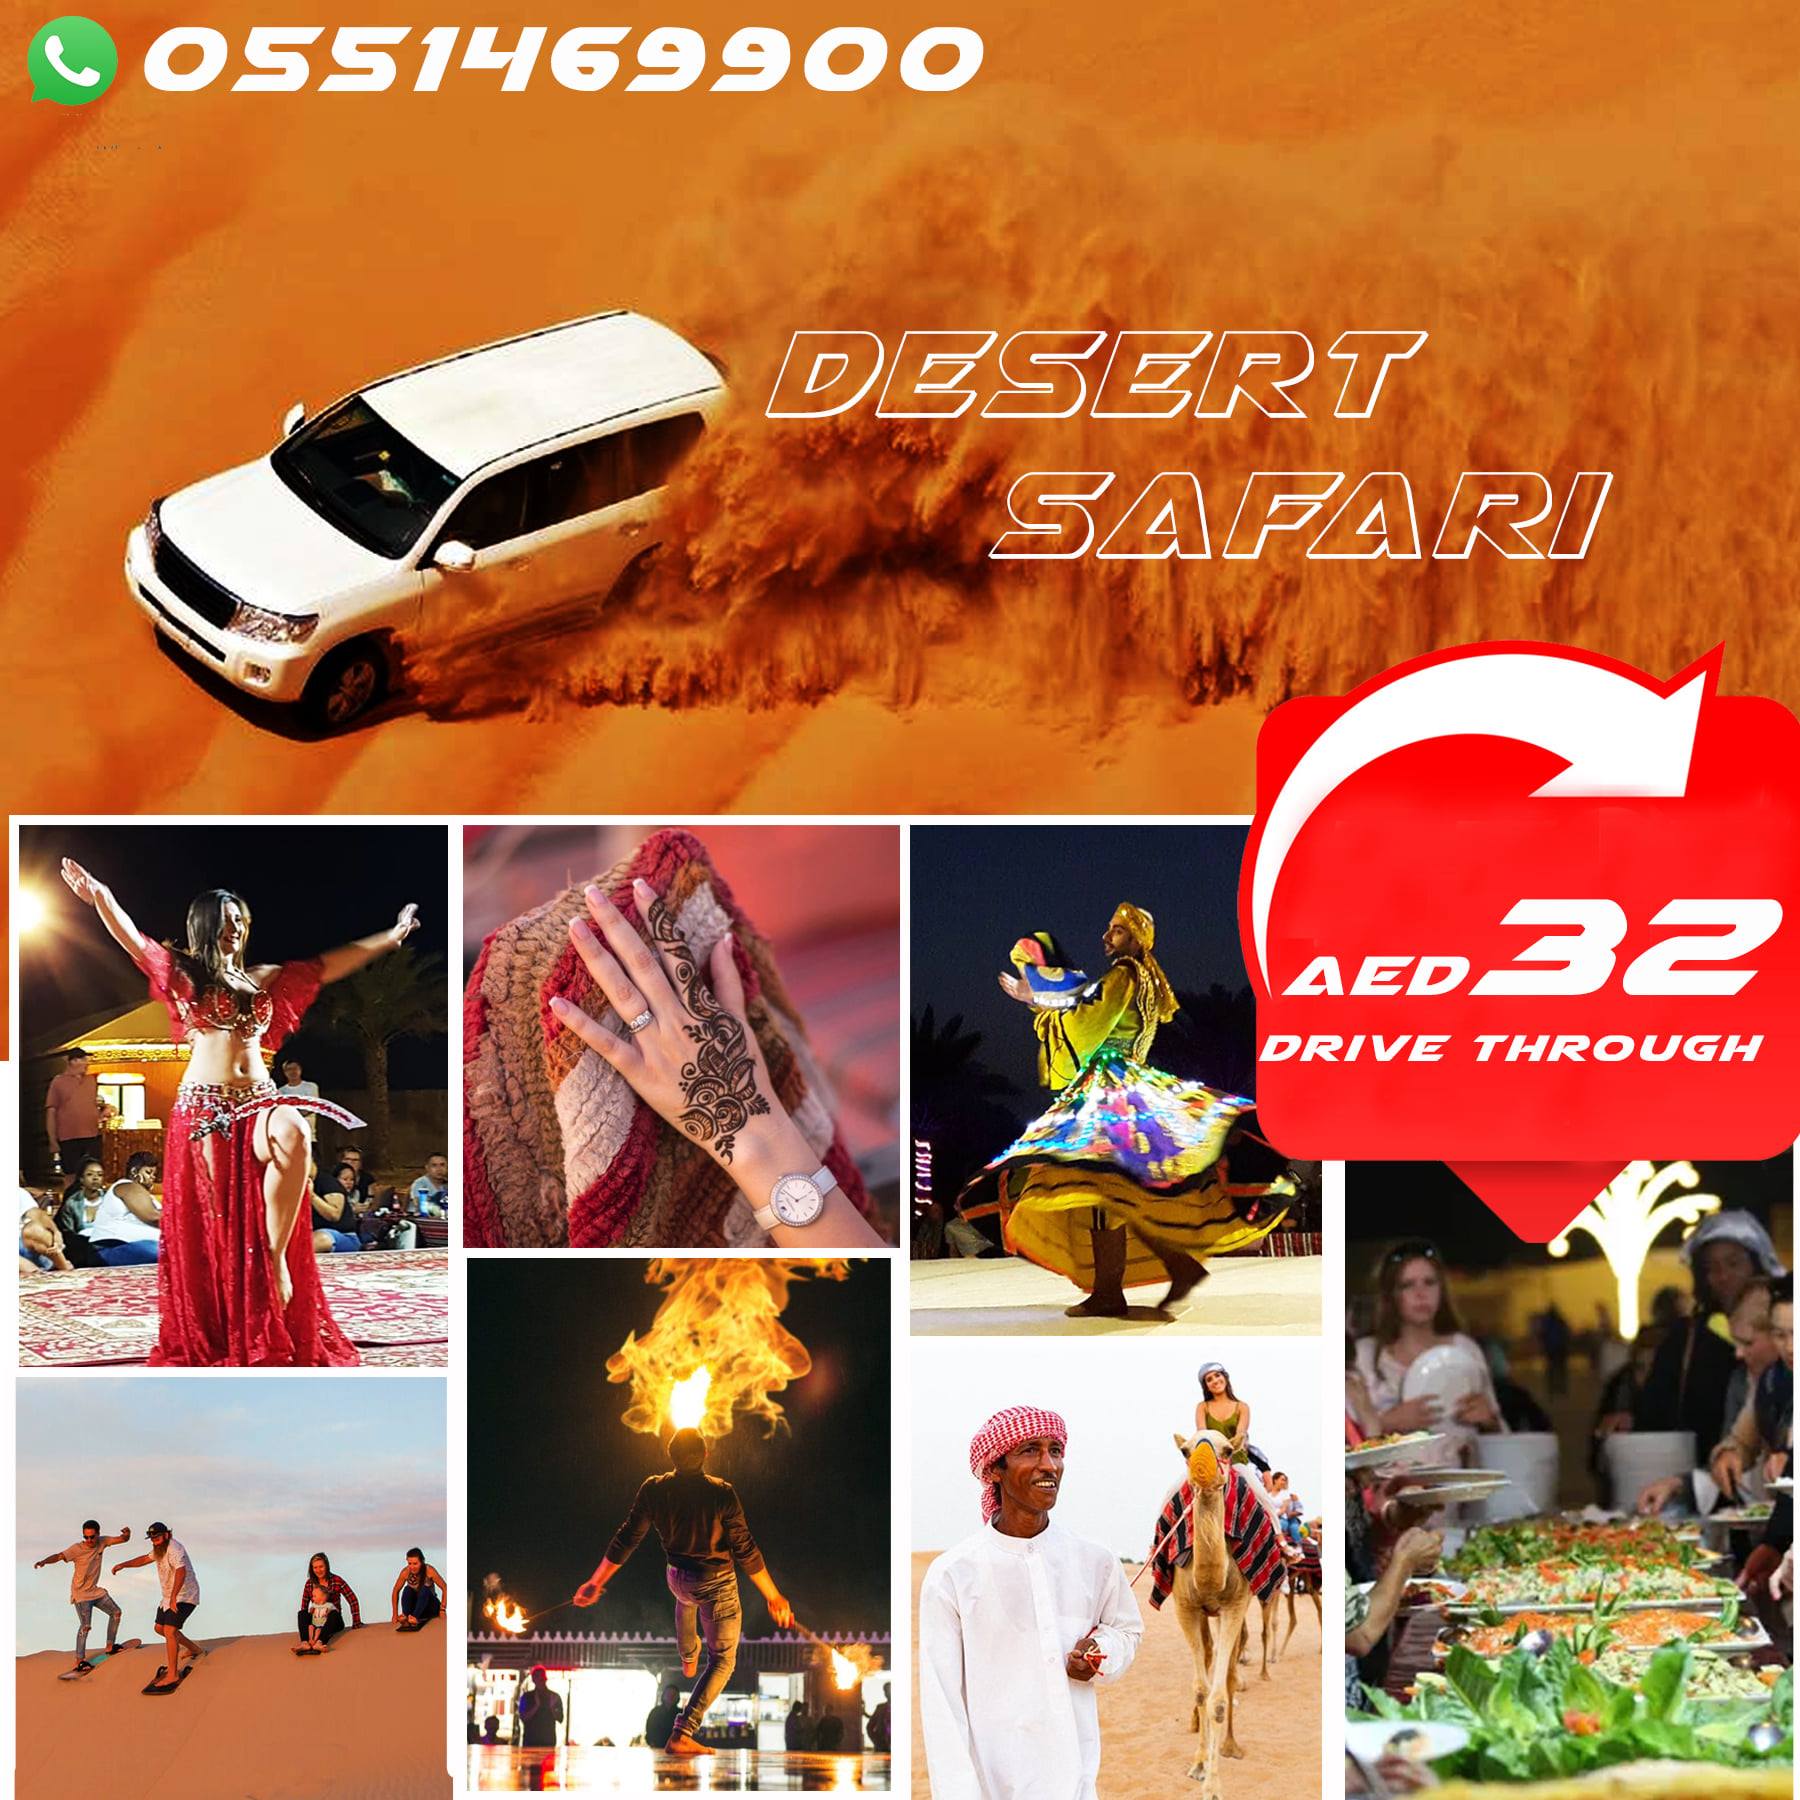 desert safari price dubai